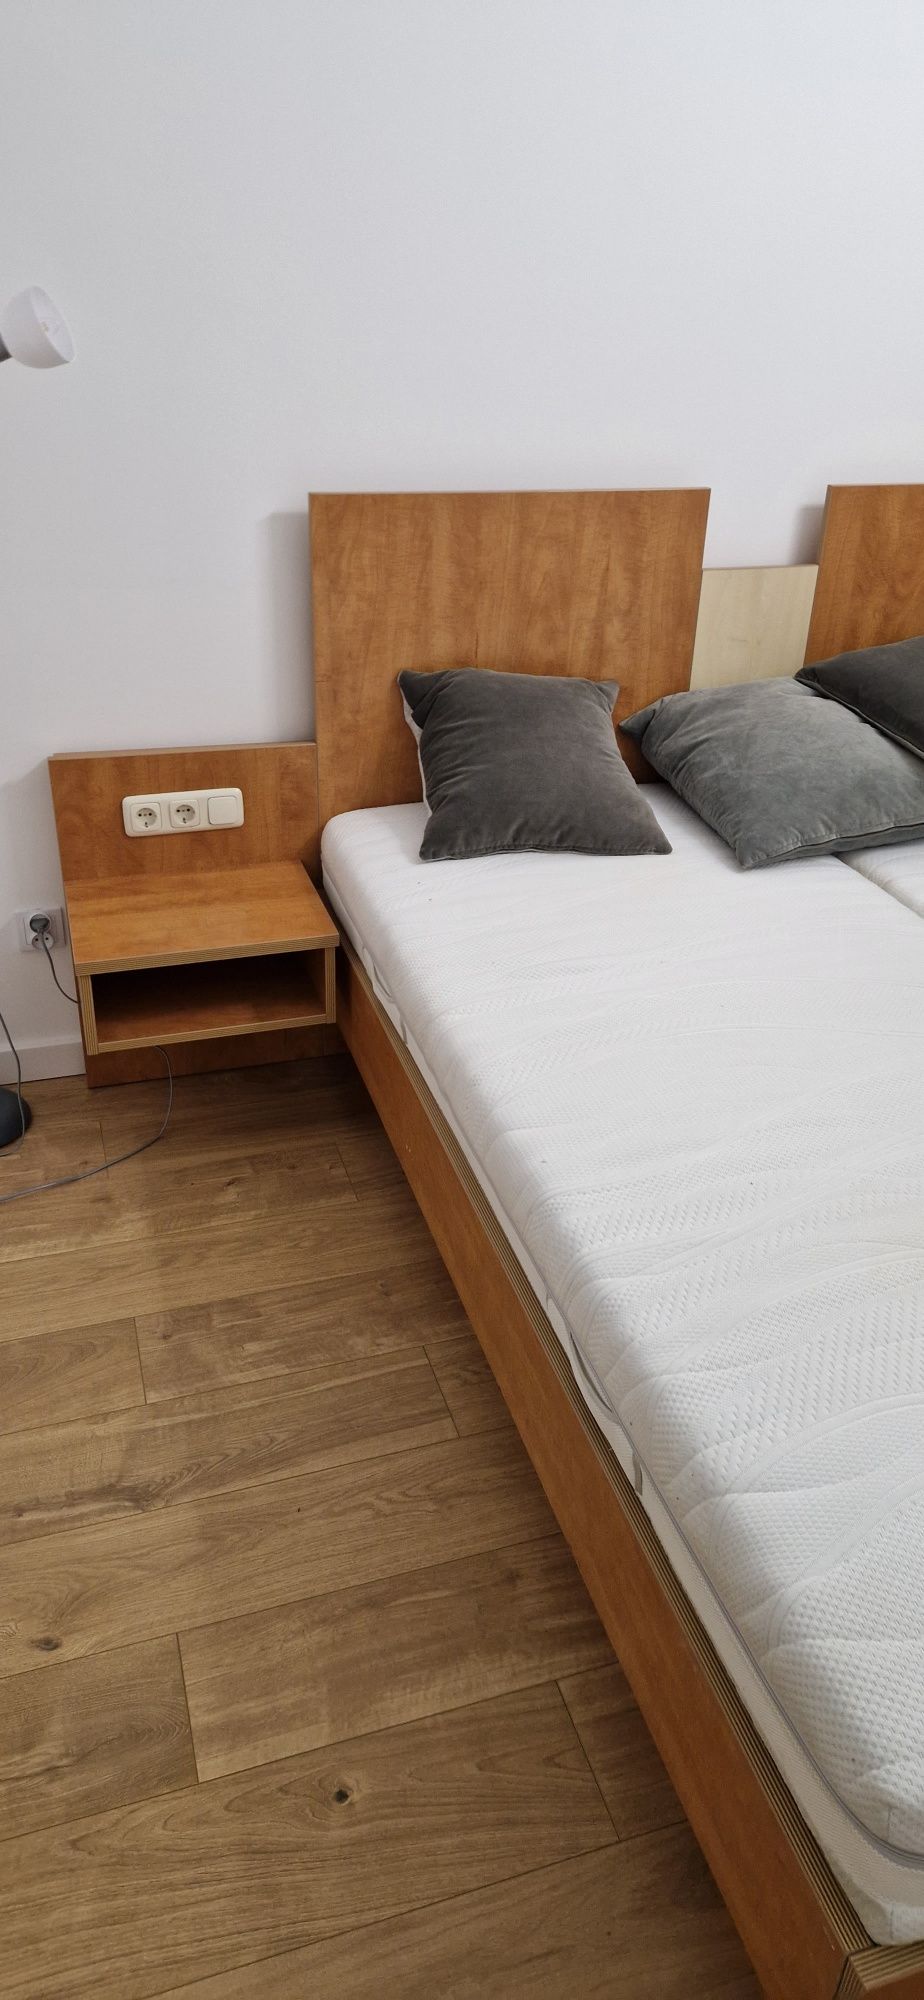 Łóżko sypialniane solidne  180×200 powierzchnia spania